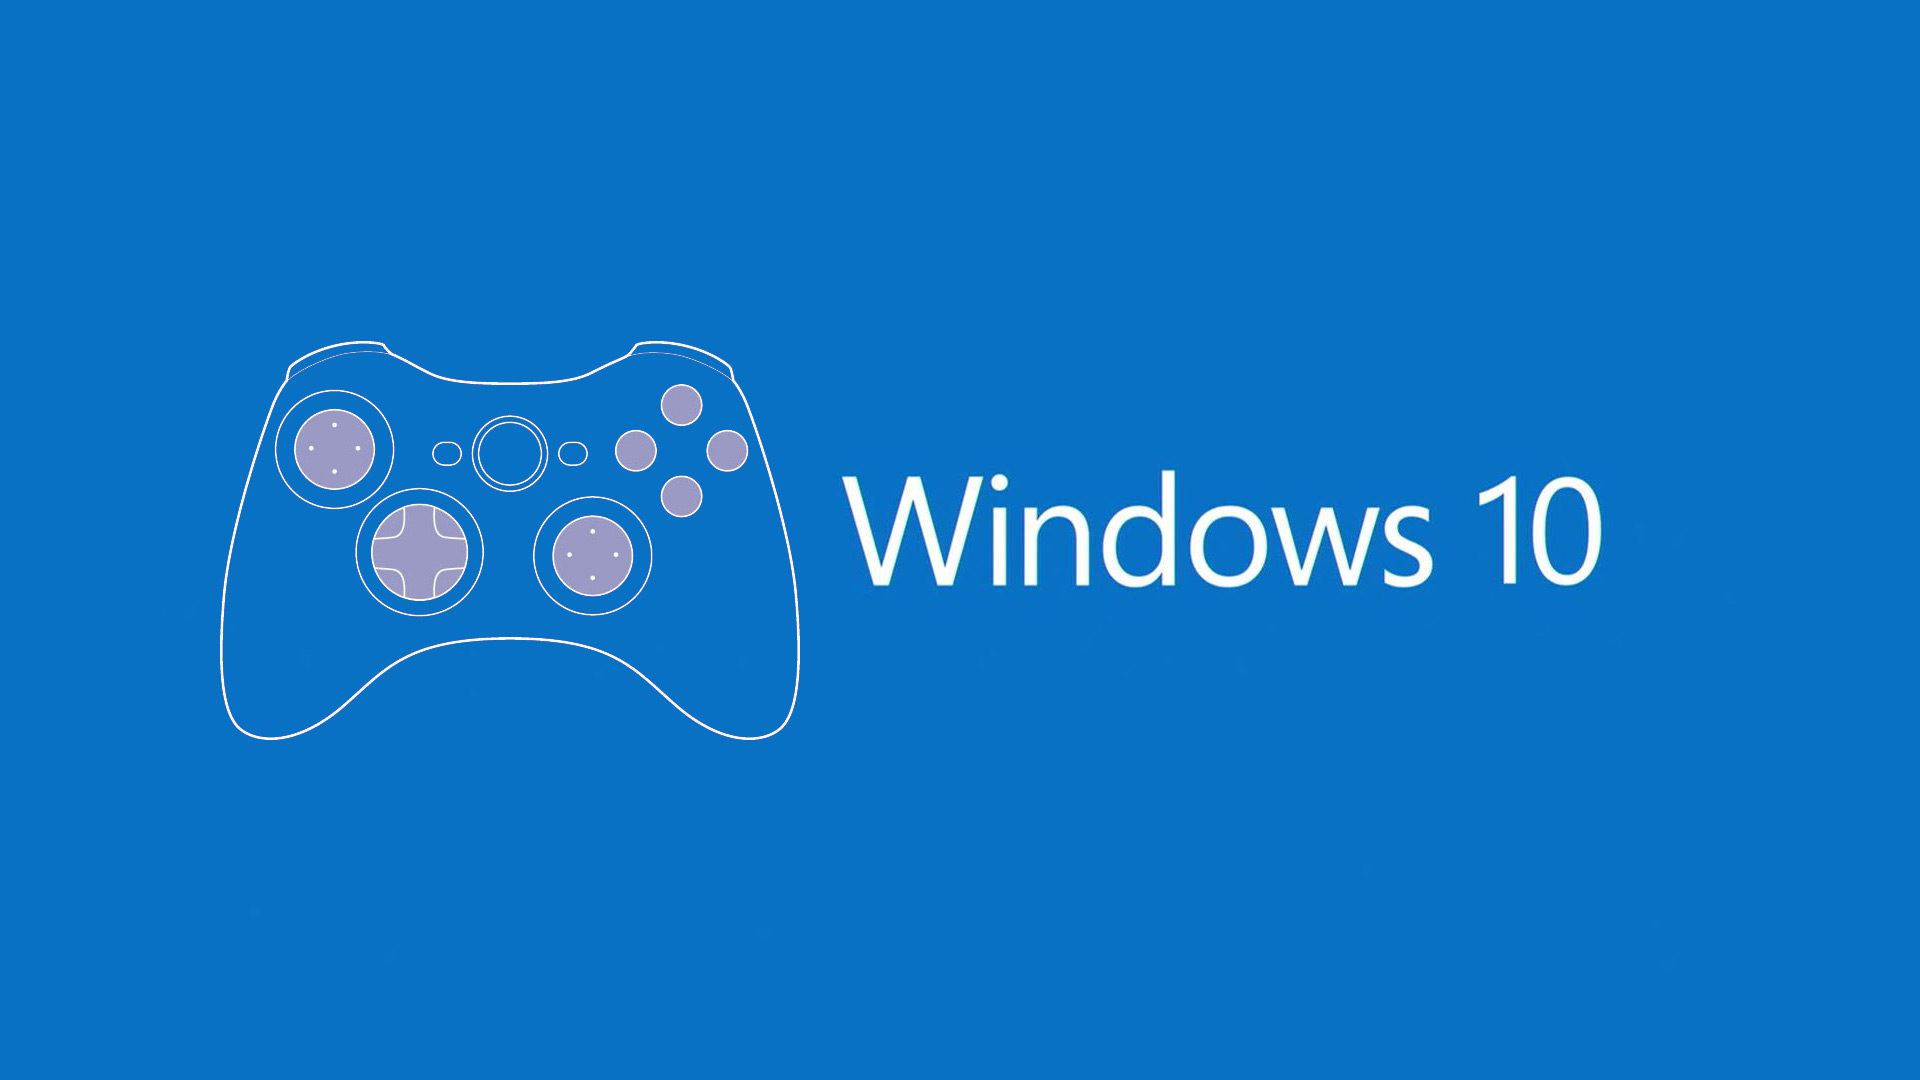 Microsoft thử nghiệm tuỳ chọn Gaming khi cài đặt Windows 10